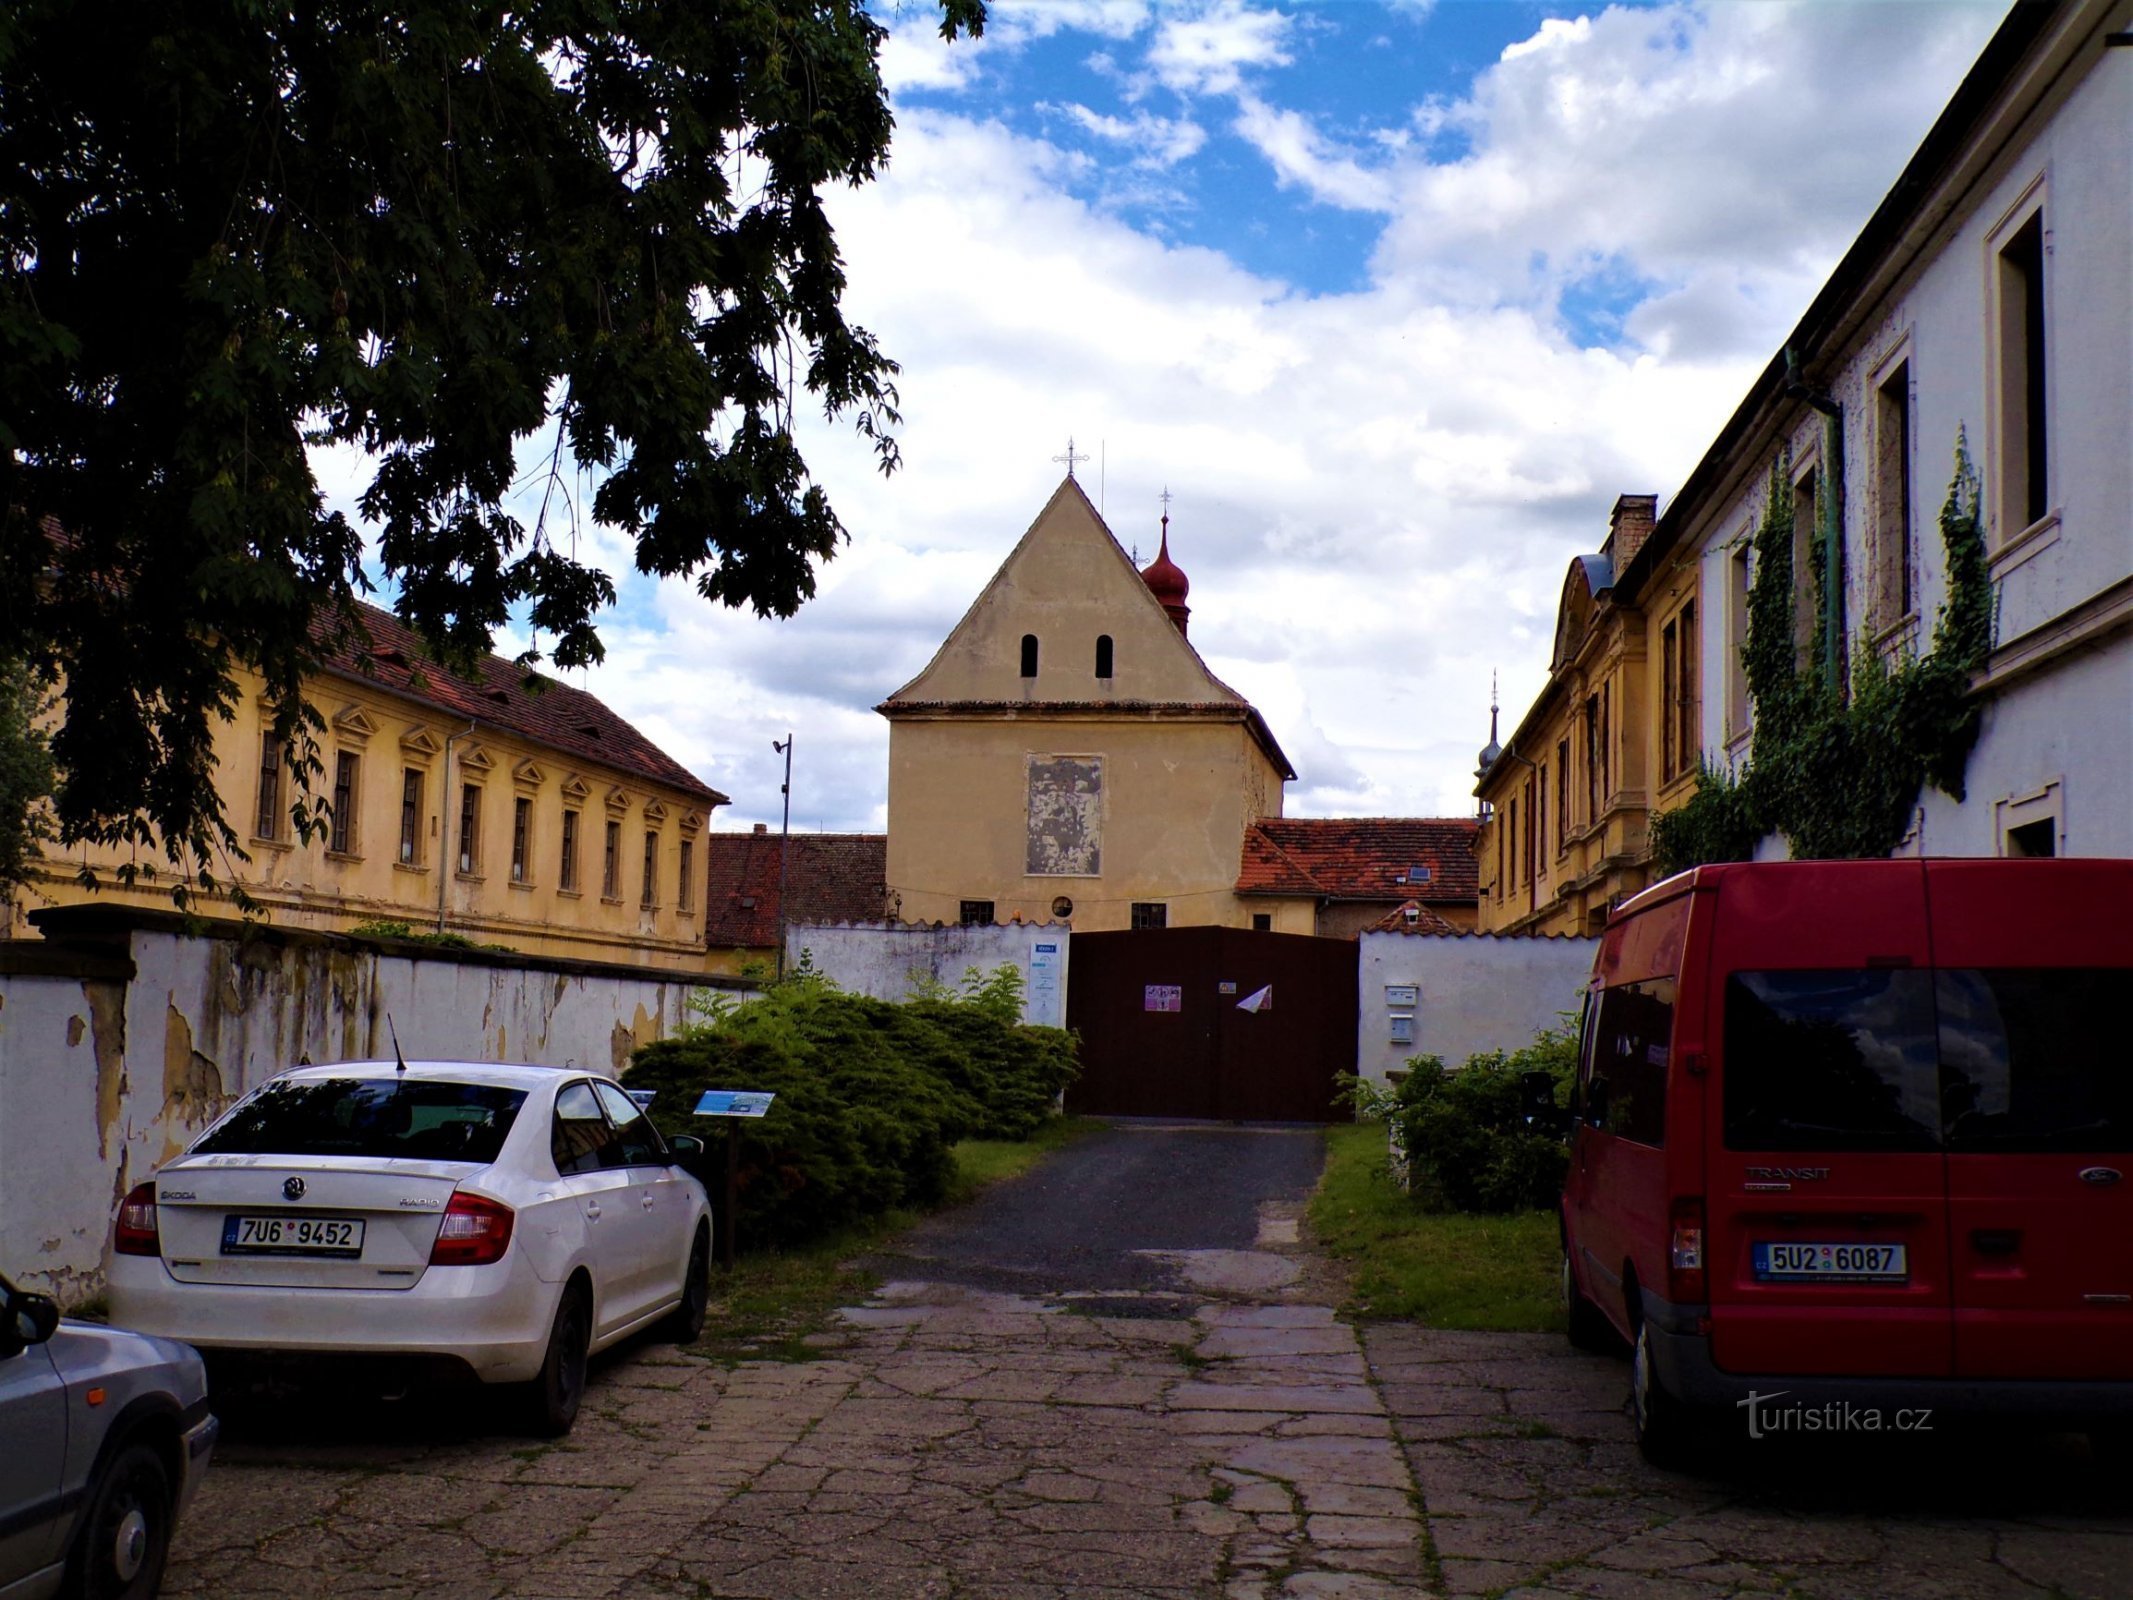 Chiesa di S. Venceslao con parte dell'ex convento dei Cappuccini (Roudnice nad Labem, 9.7.2021 luglio XNUMX)